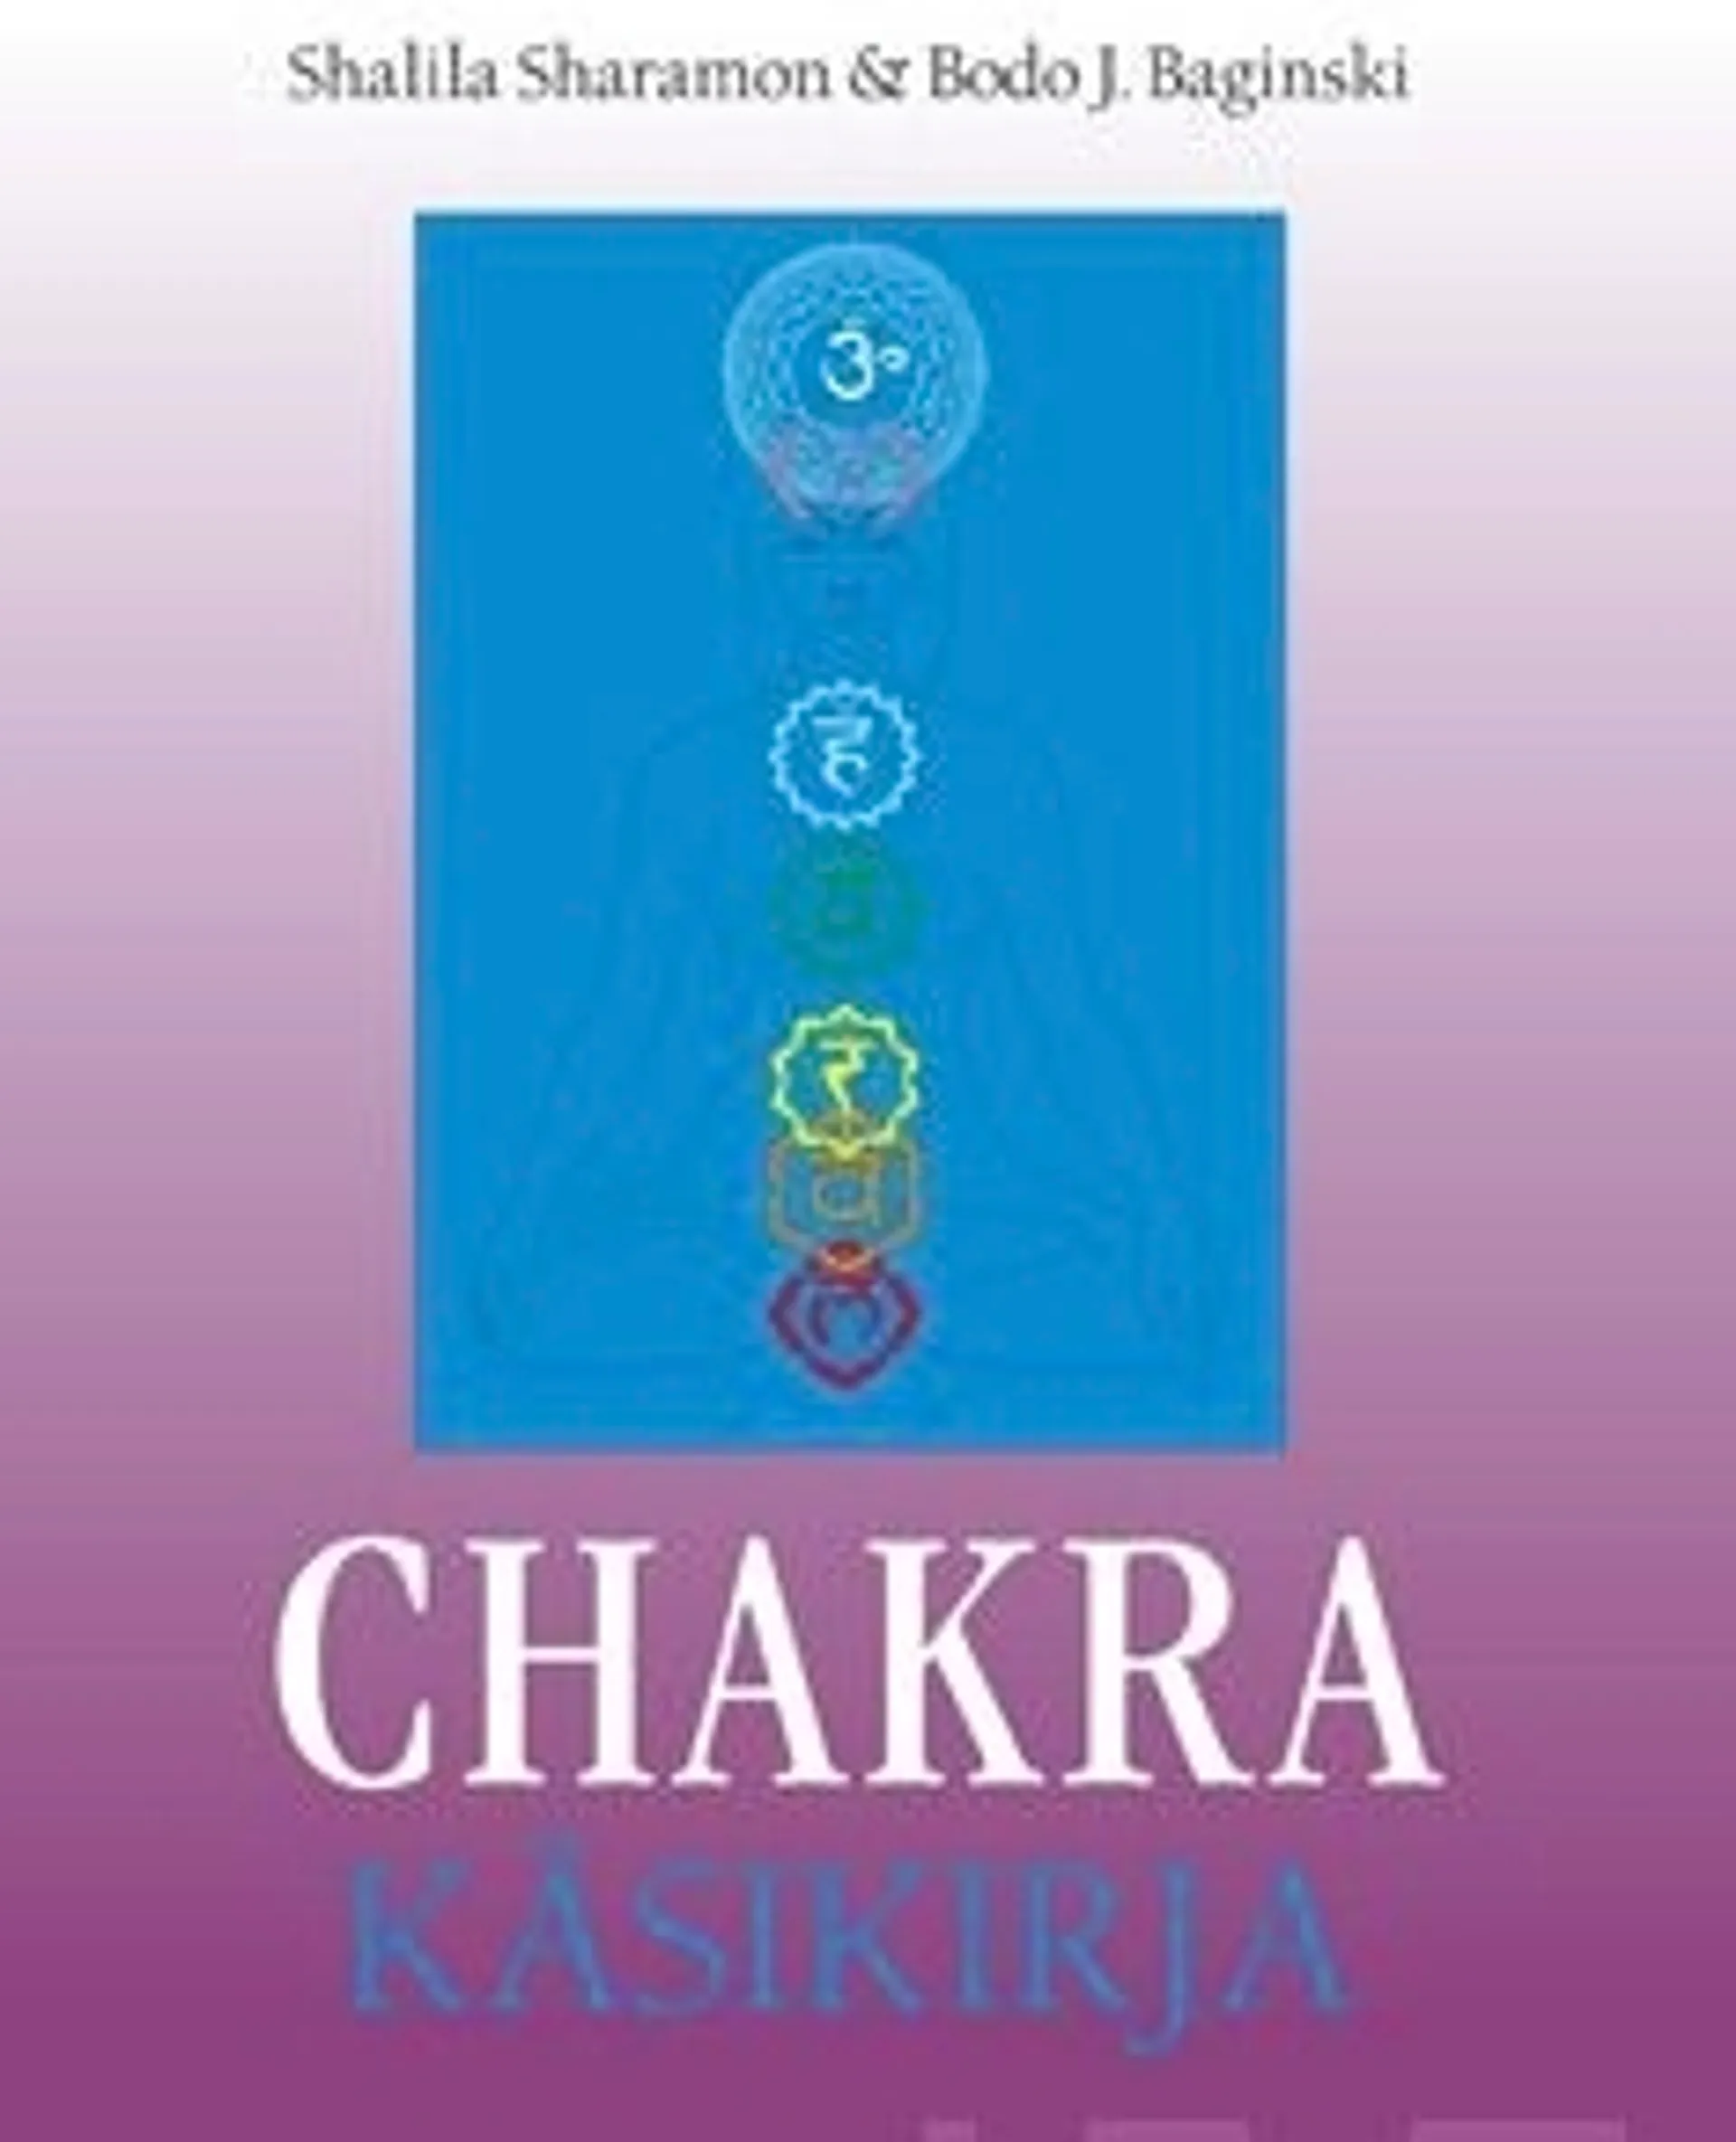 Sharamon, Chakra käsikirja